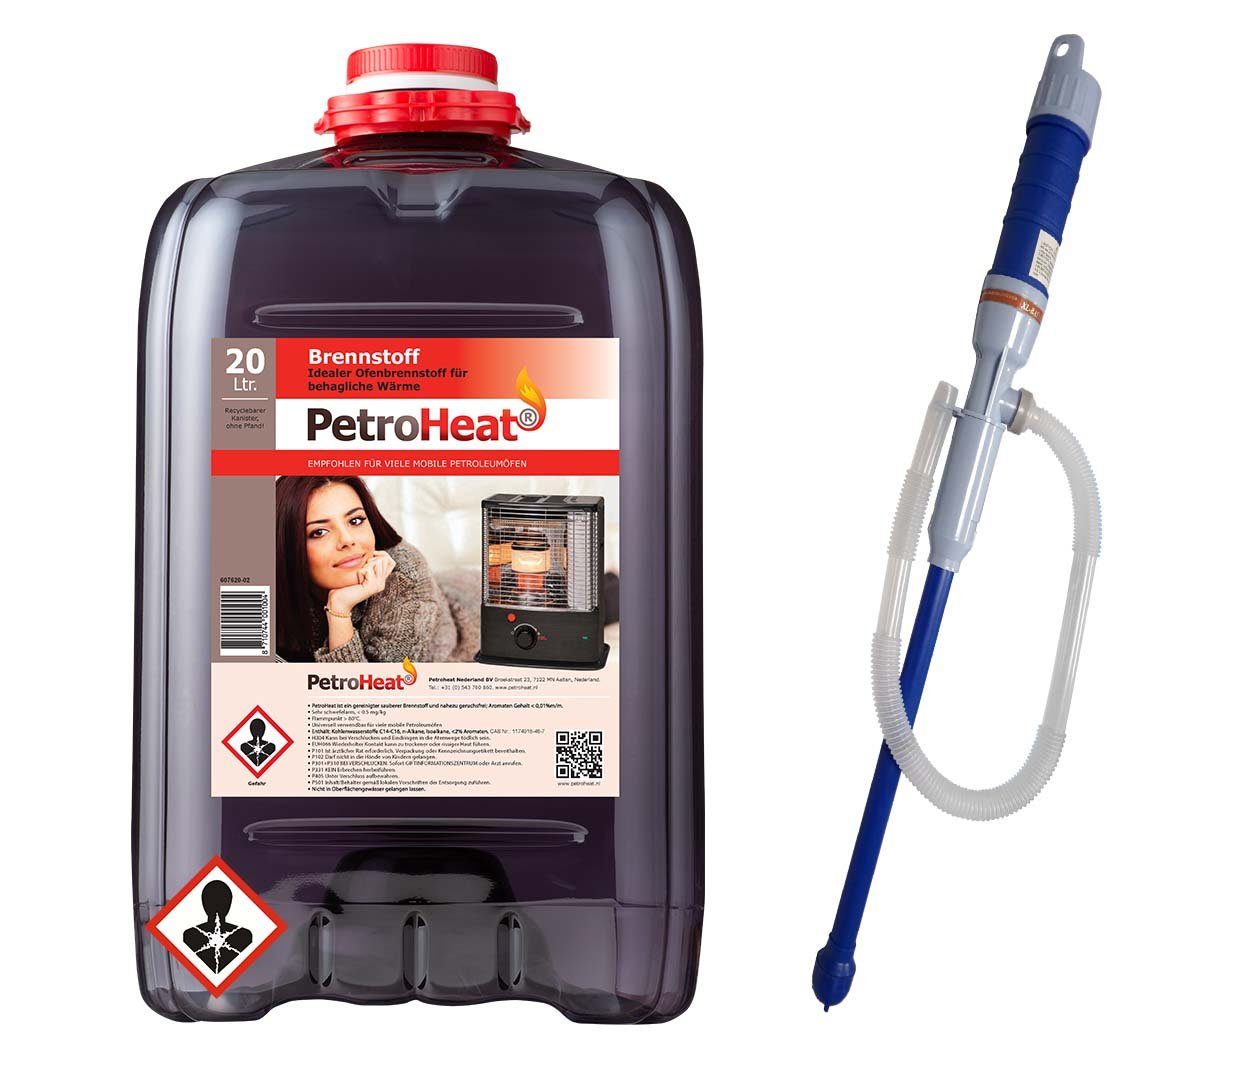 PetroHeat Petroleum 20 Liter Brennstoff geruchsarm für Petroleumofen, mit elektrischer Pumpe, für mobile Petroleum-Heizung, Petroleumöfen